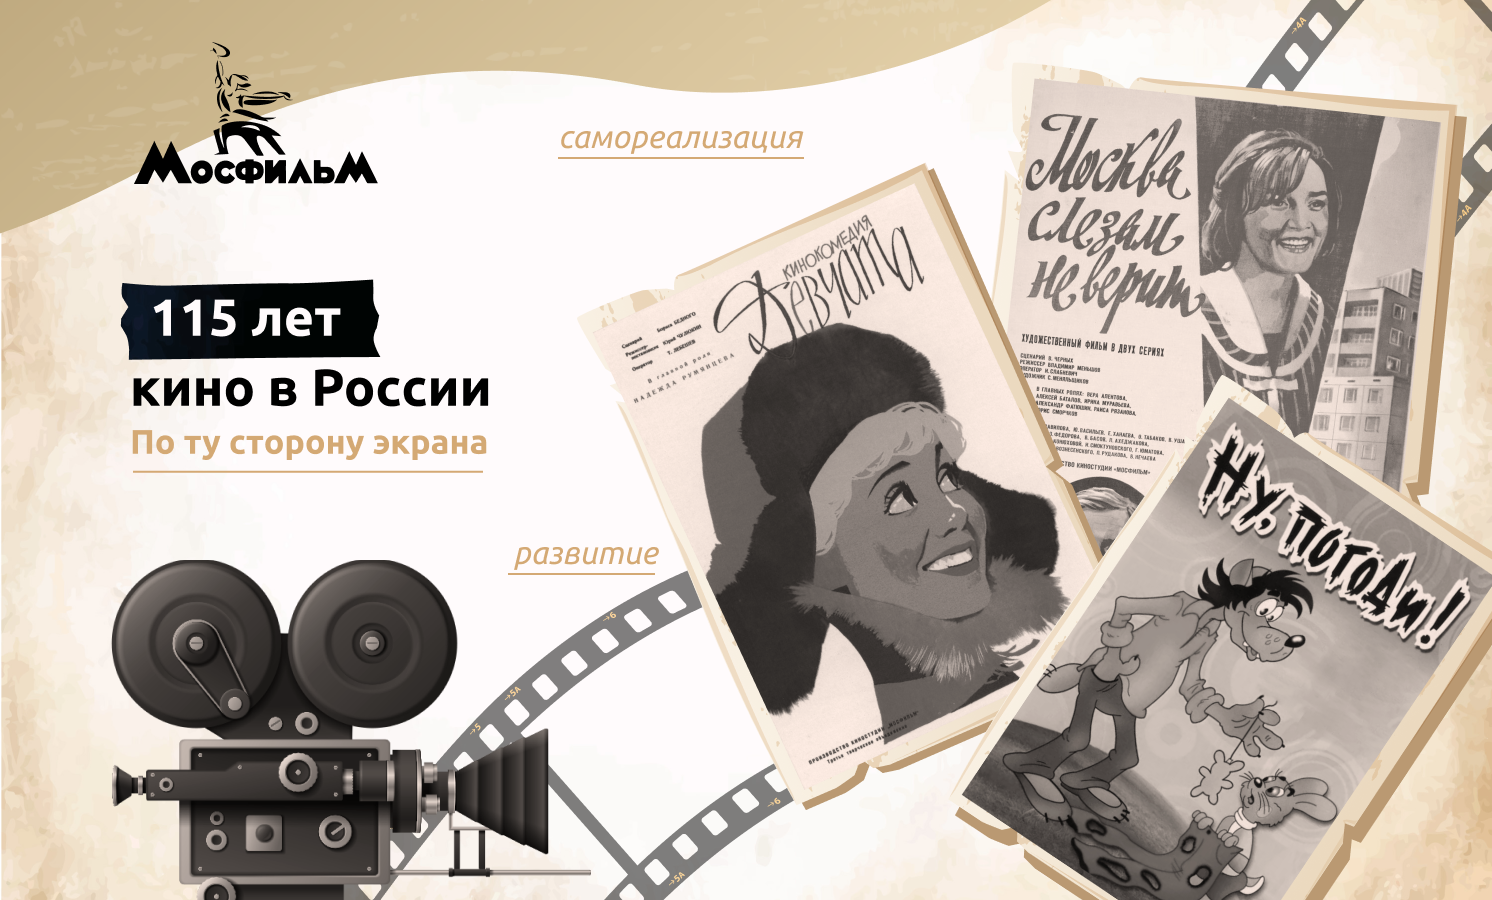 Разговоры о важном: По ту сторону экрана. 115 лет кино в России.